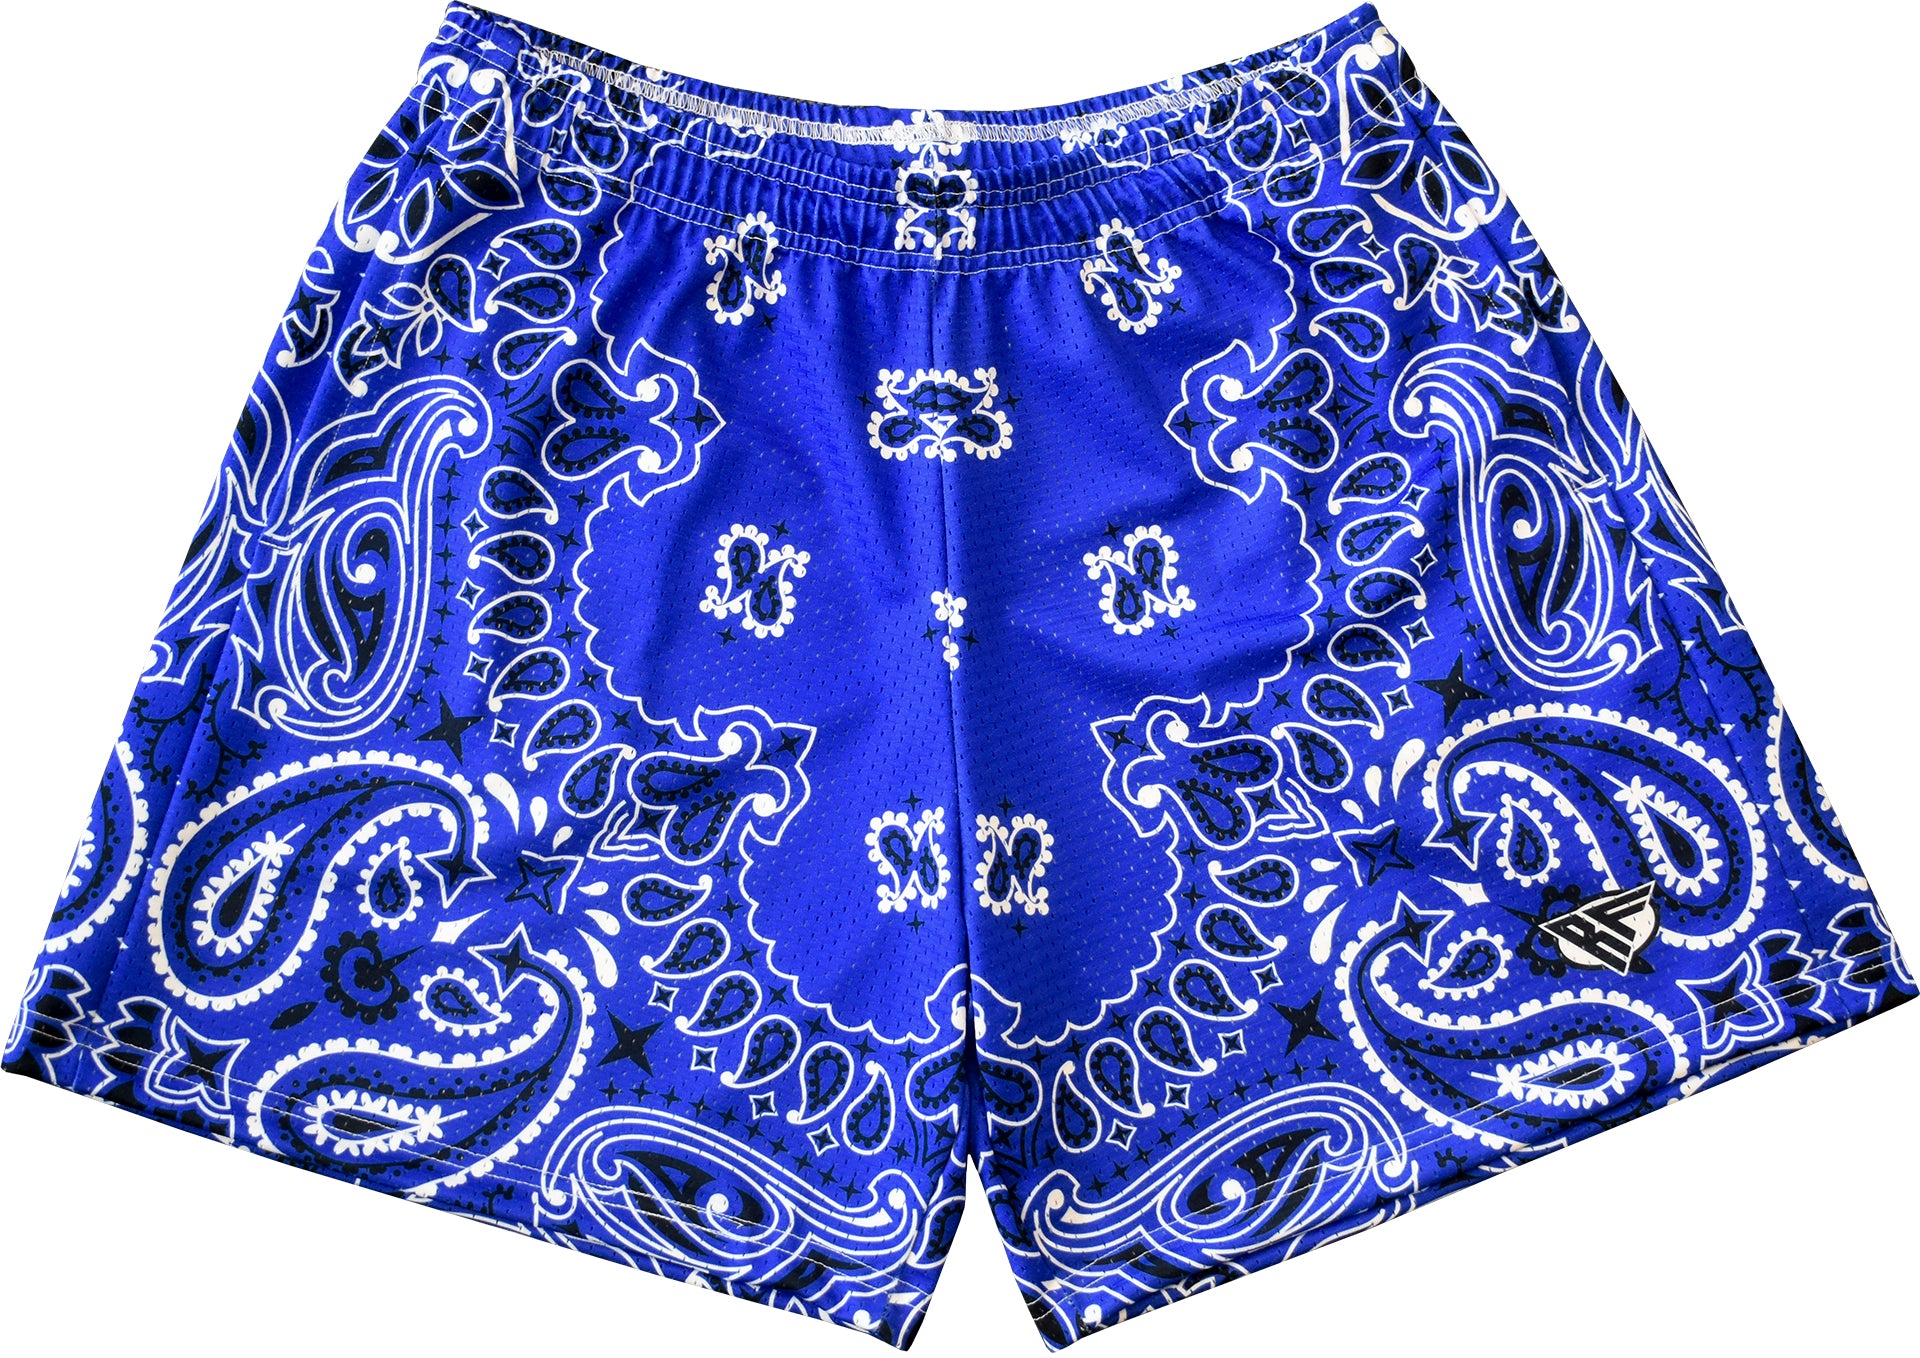 Powder Blue Bandana Shorts – XOA Lifestyle Clothing Brand